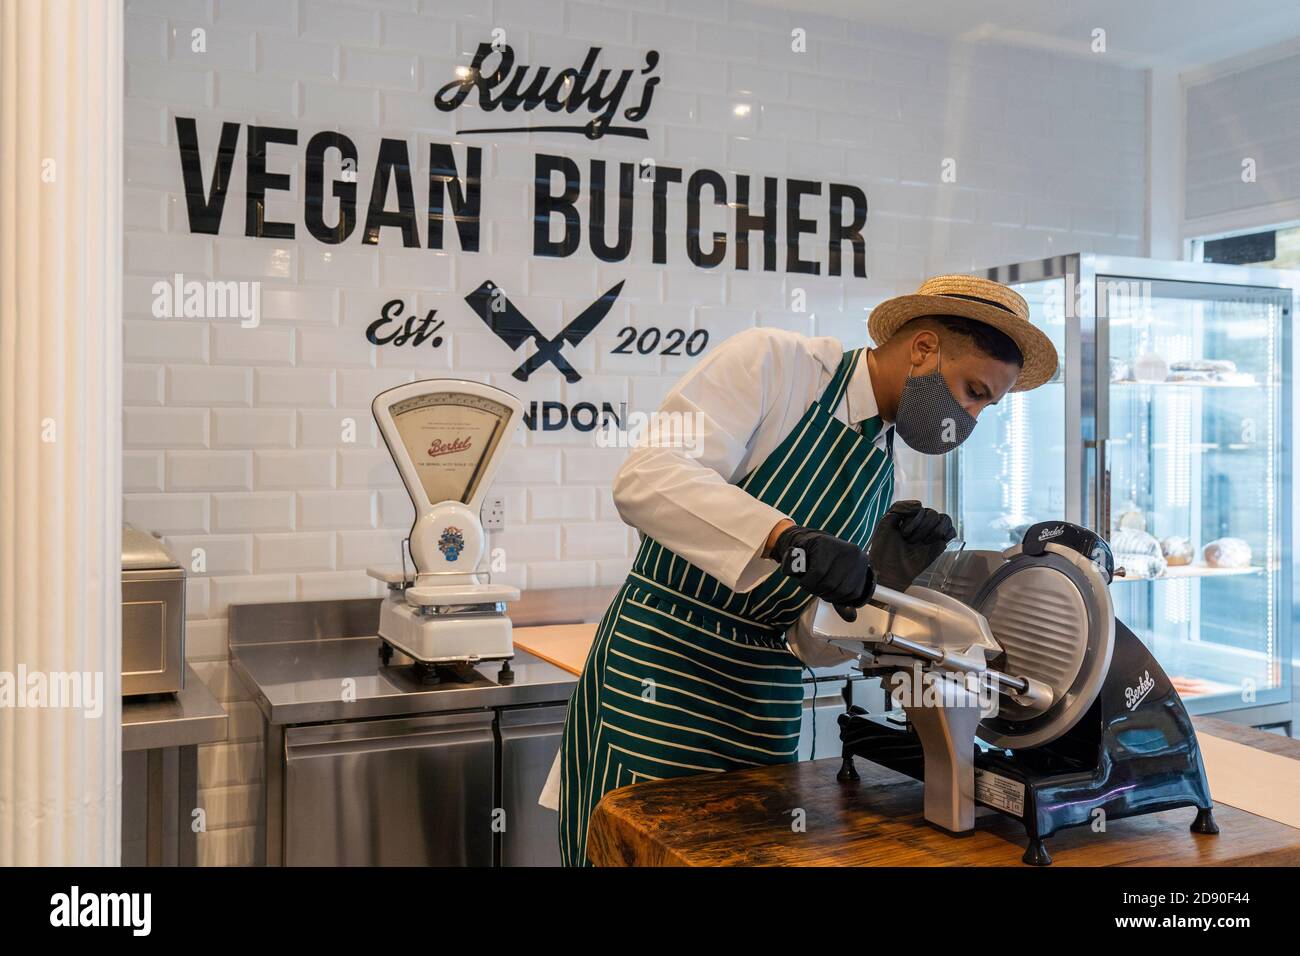 Rudys Vegan Butcher Delikatessengeschäft wird in Islington London eröffnet. Bild zeigt 'Metzger', der Fleischersatz aufschlitzt, Gesichtsmaske trägt. Stockfoto